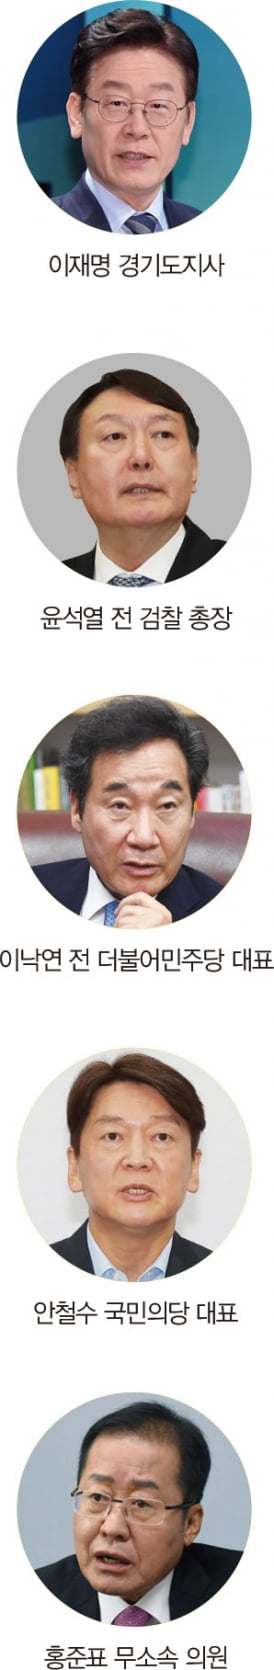 여당의 서울·부산시장 참패가 흔든 대선 구도[홍영식의 정치판]